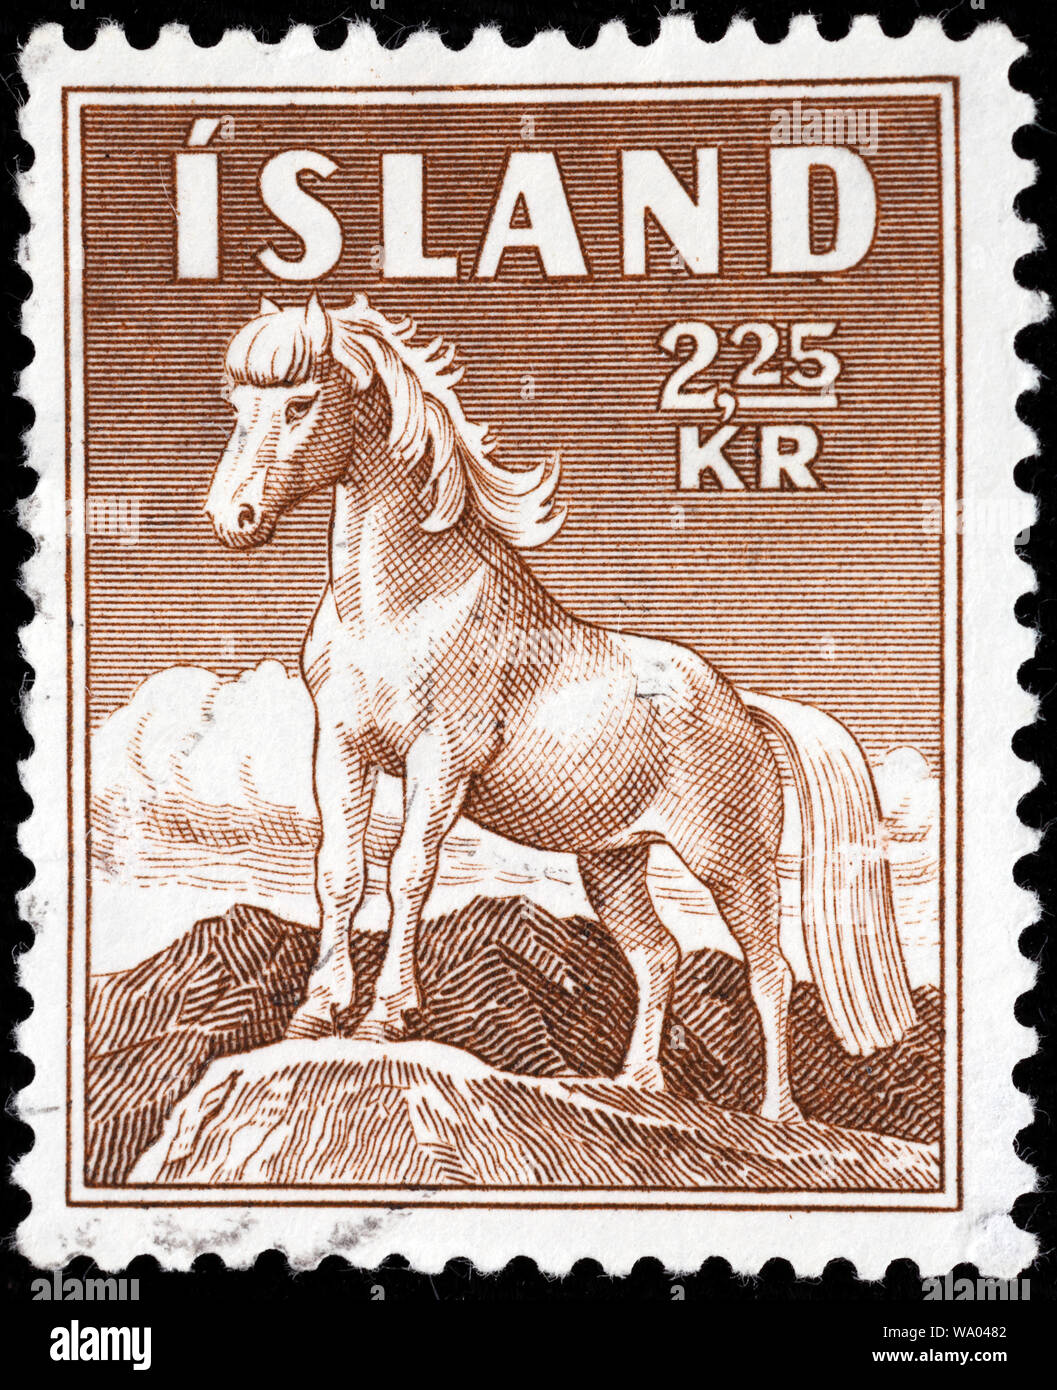 Icelandic horse, Equus ferus caballus, postage stamp, Iceland, 1958 Stock Photo